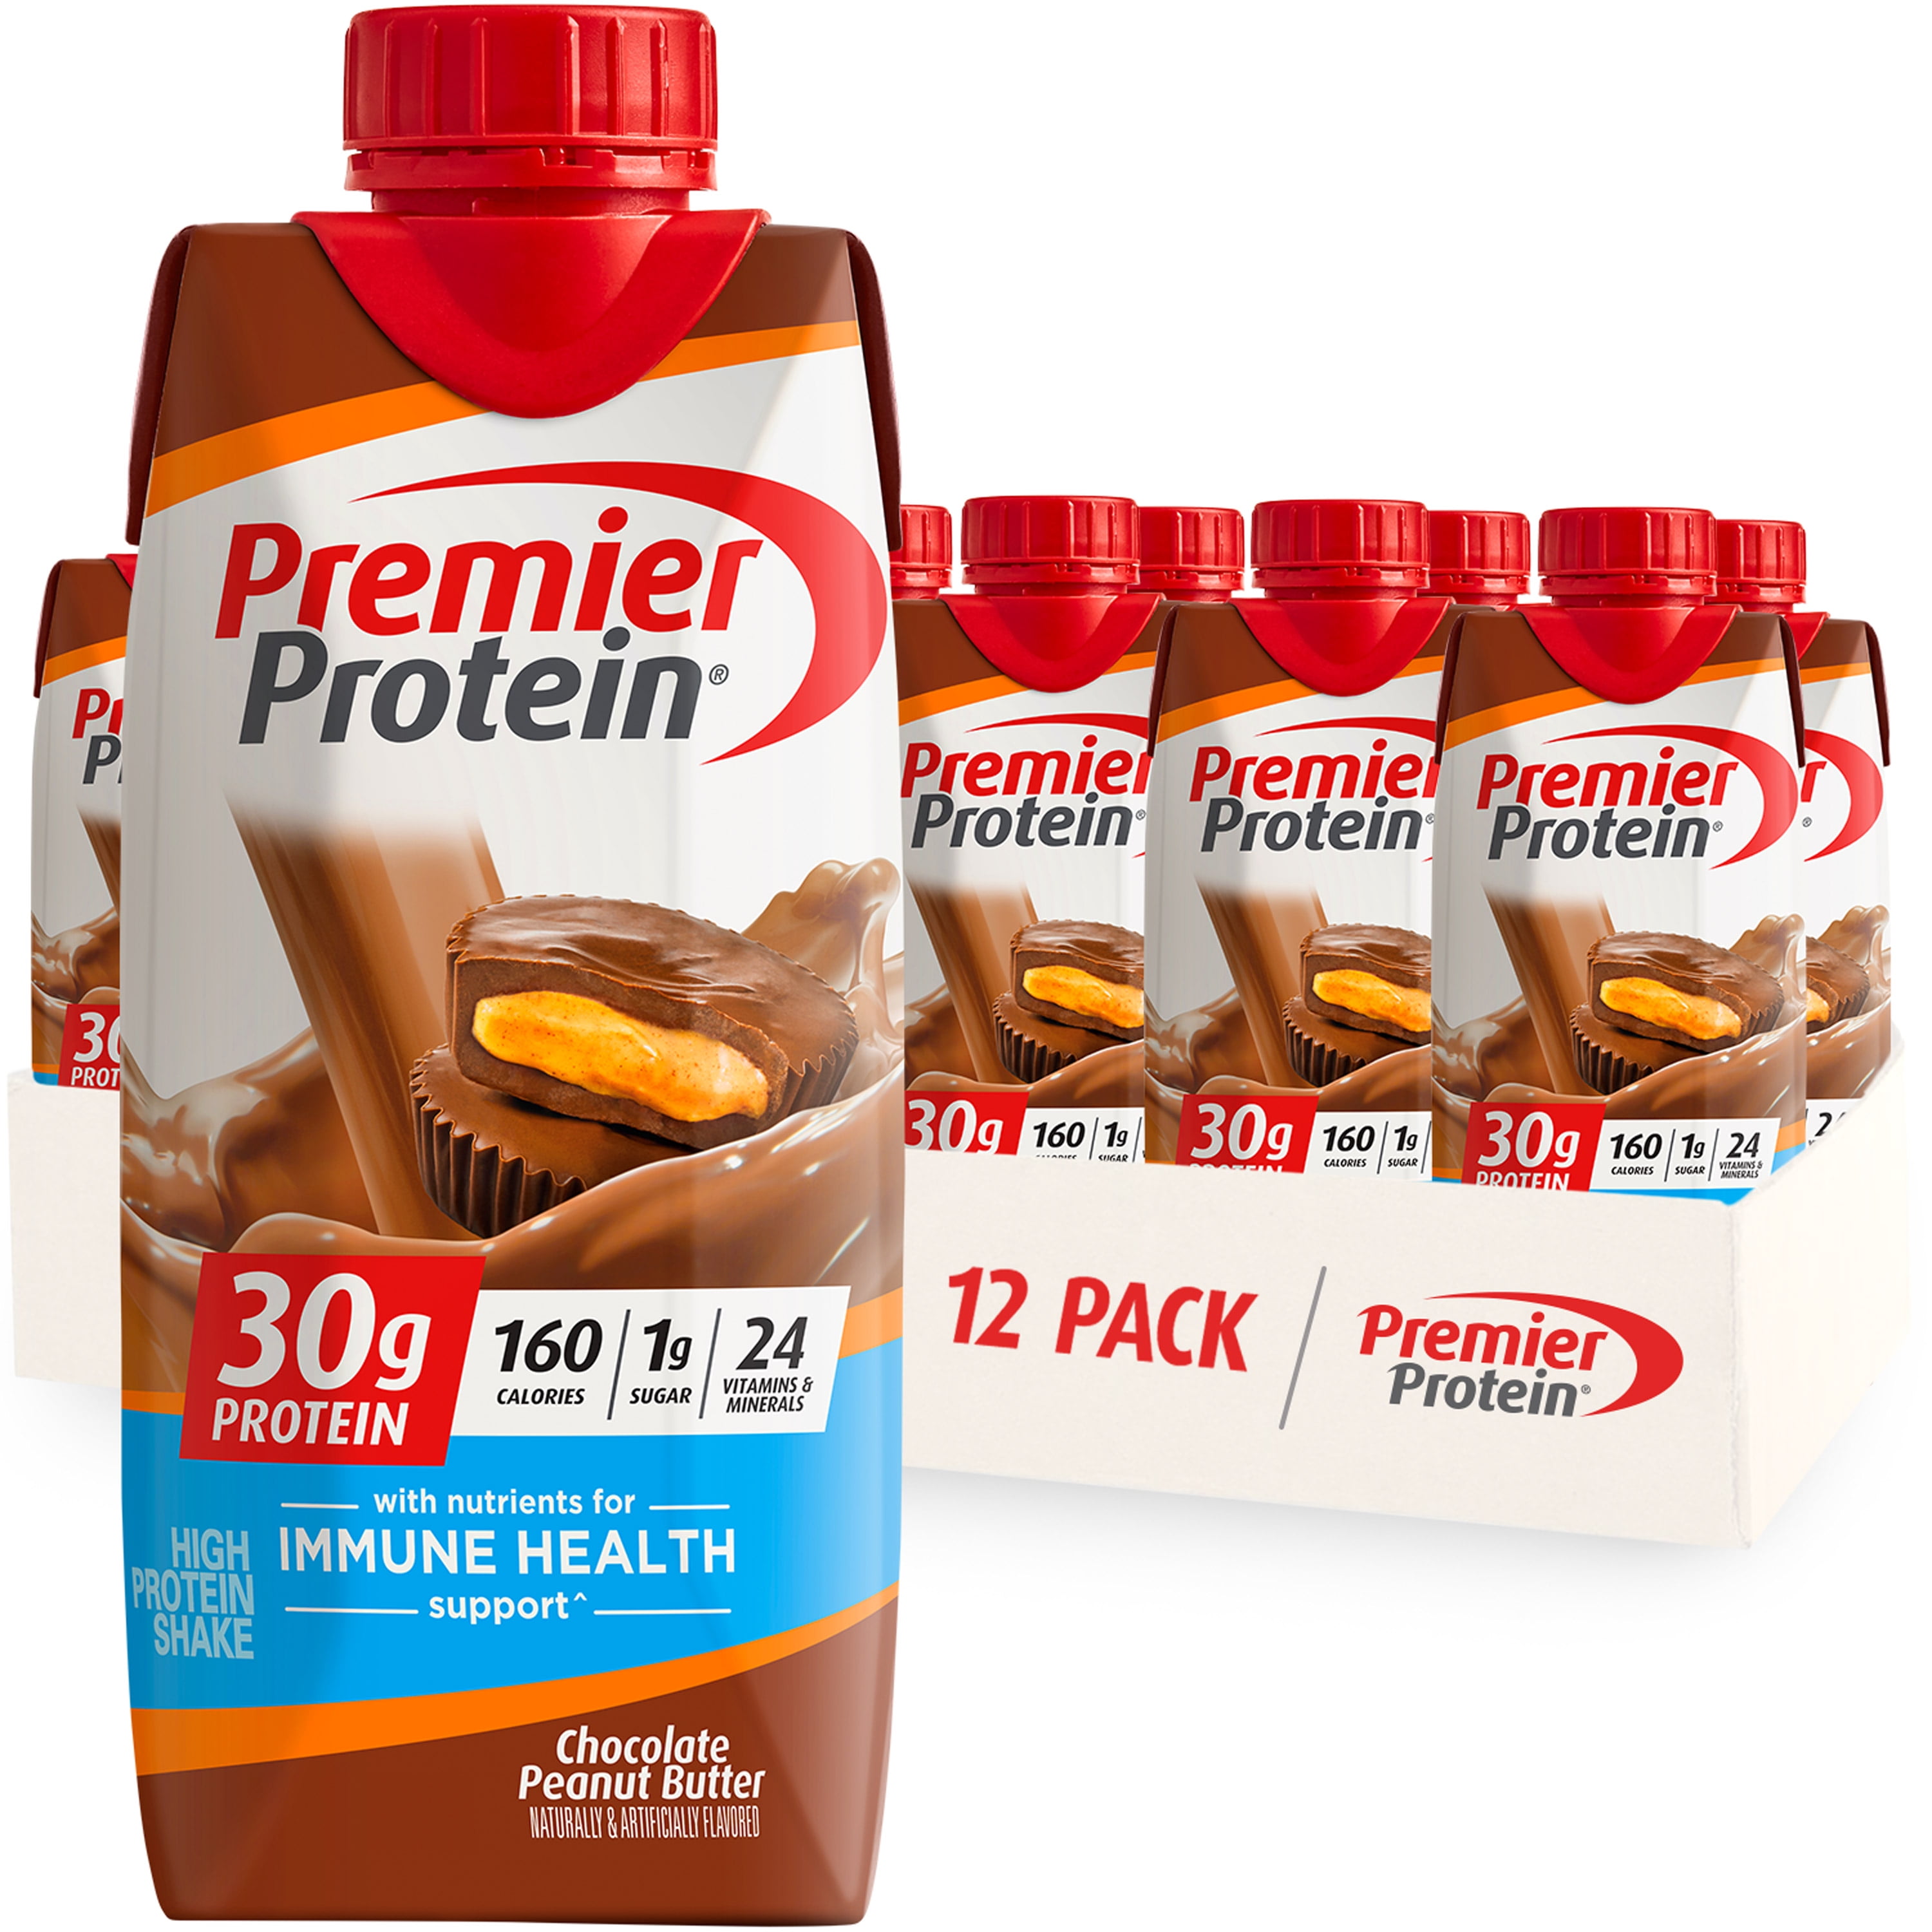 Premier Protein Shake, Strawberries & Cream, 30g Protein, 11 fl oz, 12 Ct 